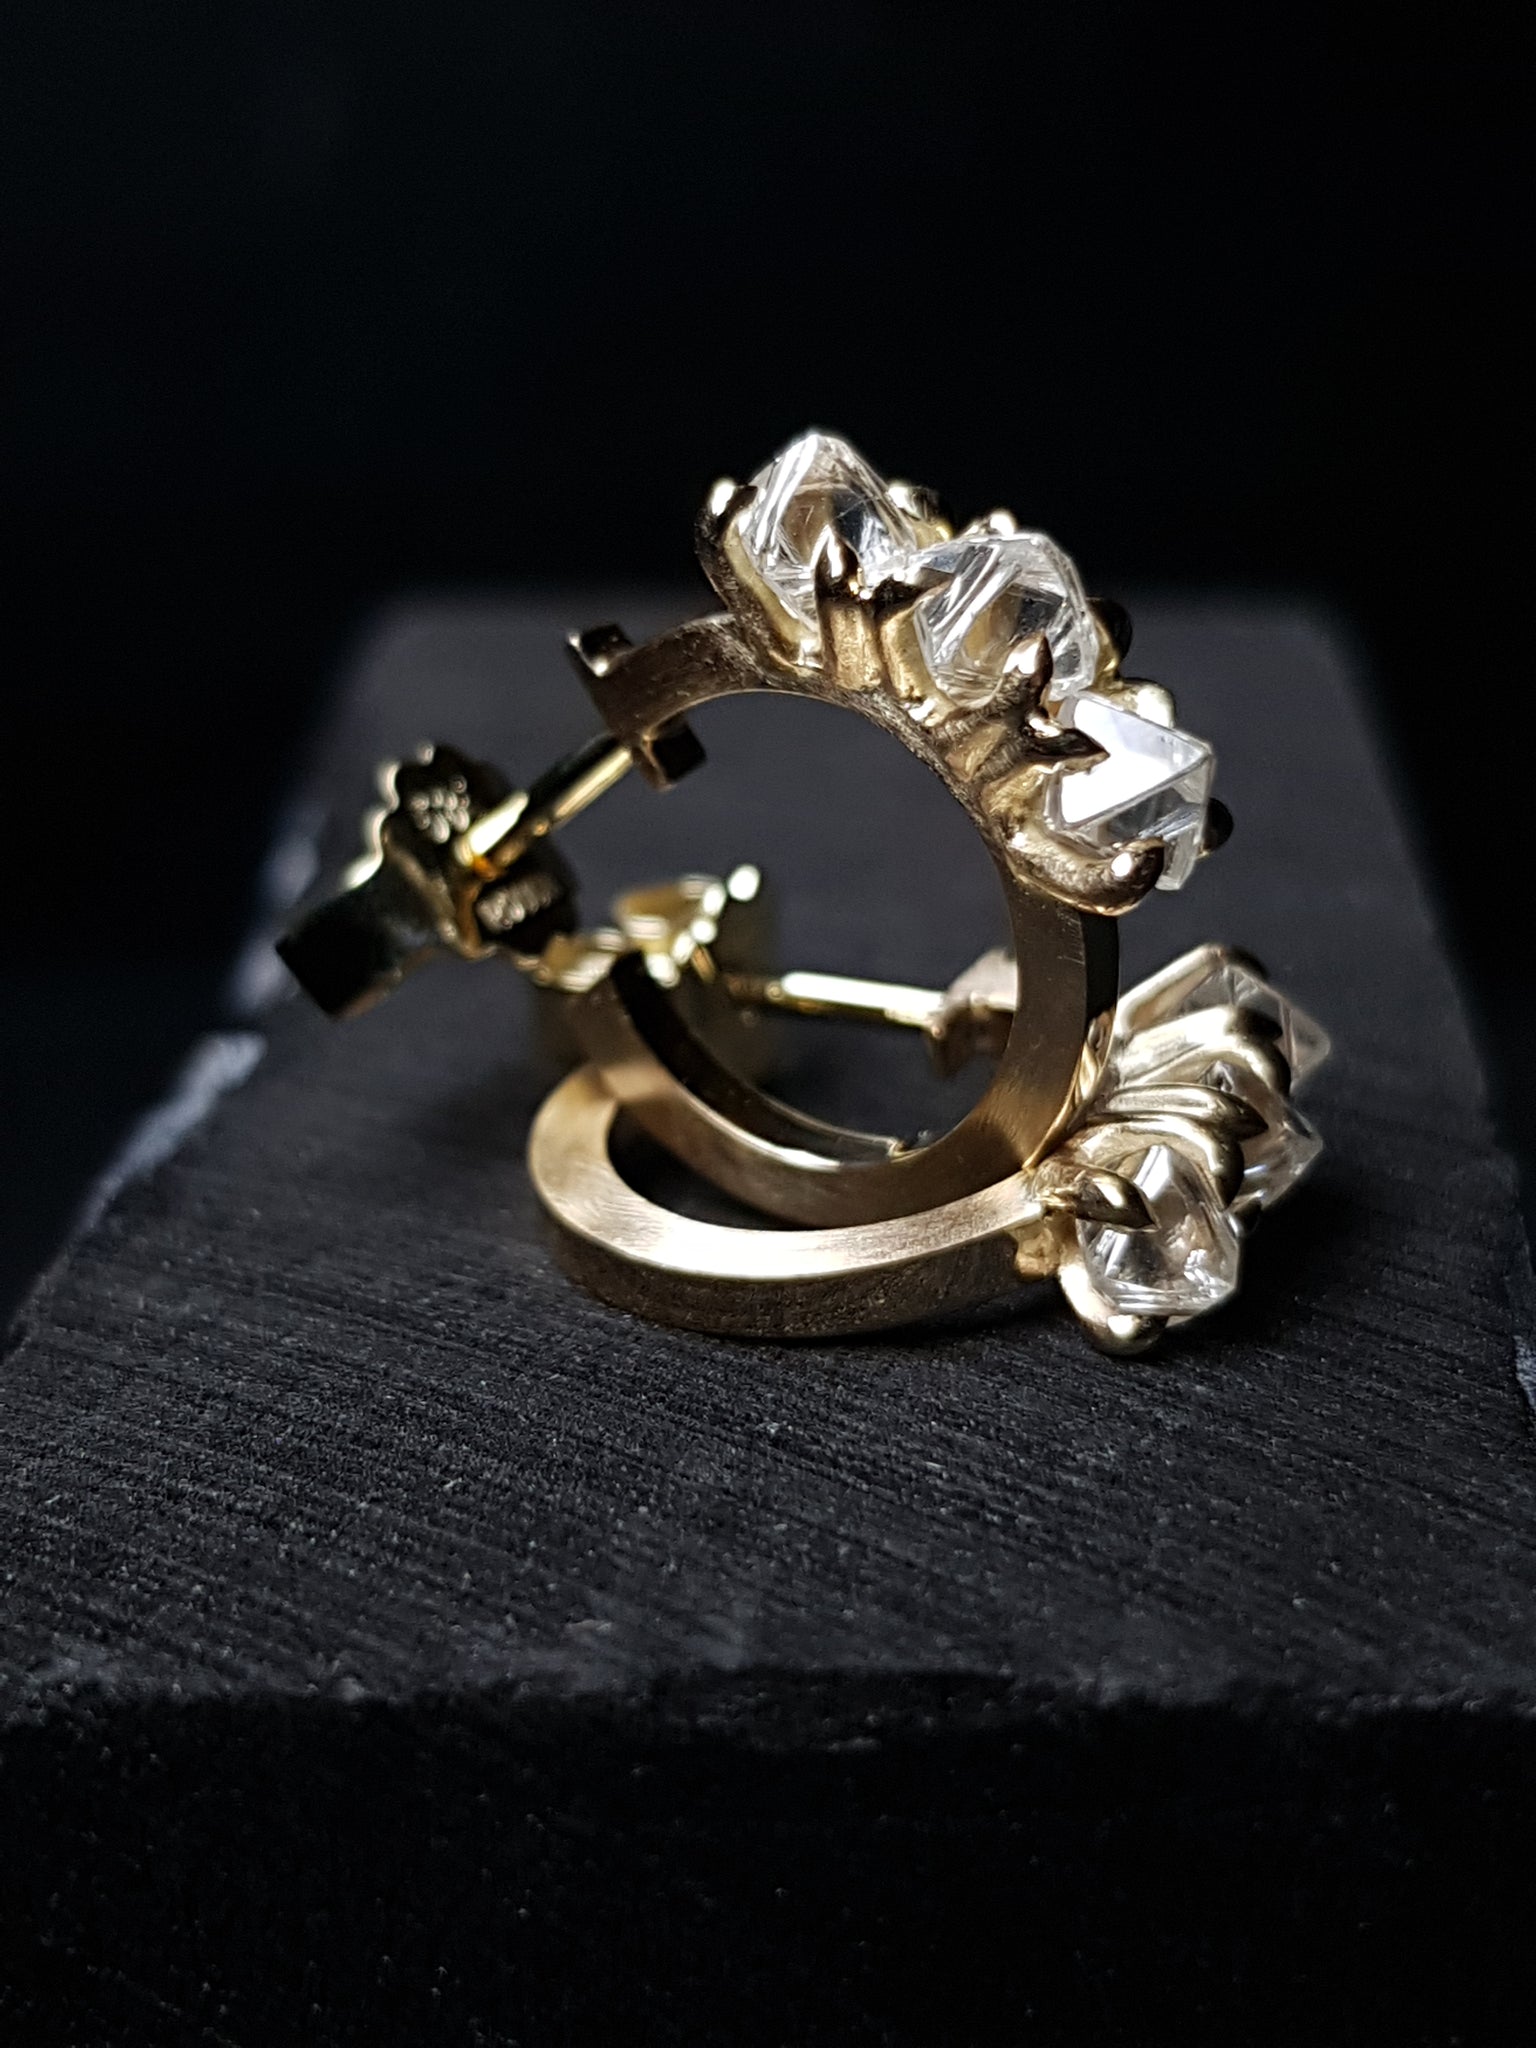 Seks Rå Diamanter fra Botswana i Guld Kreolere – 1.66 ct.